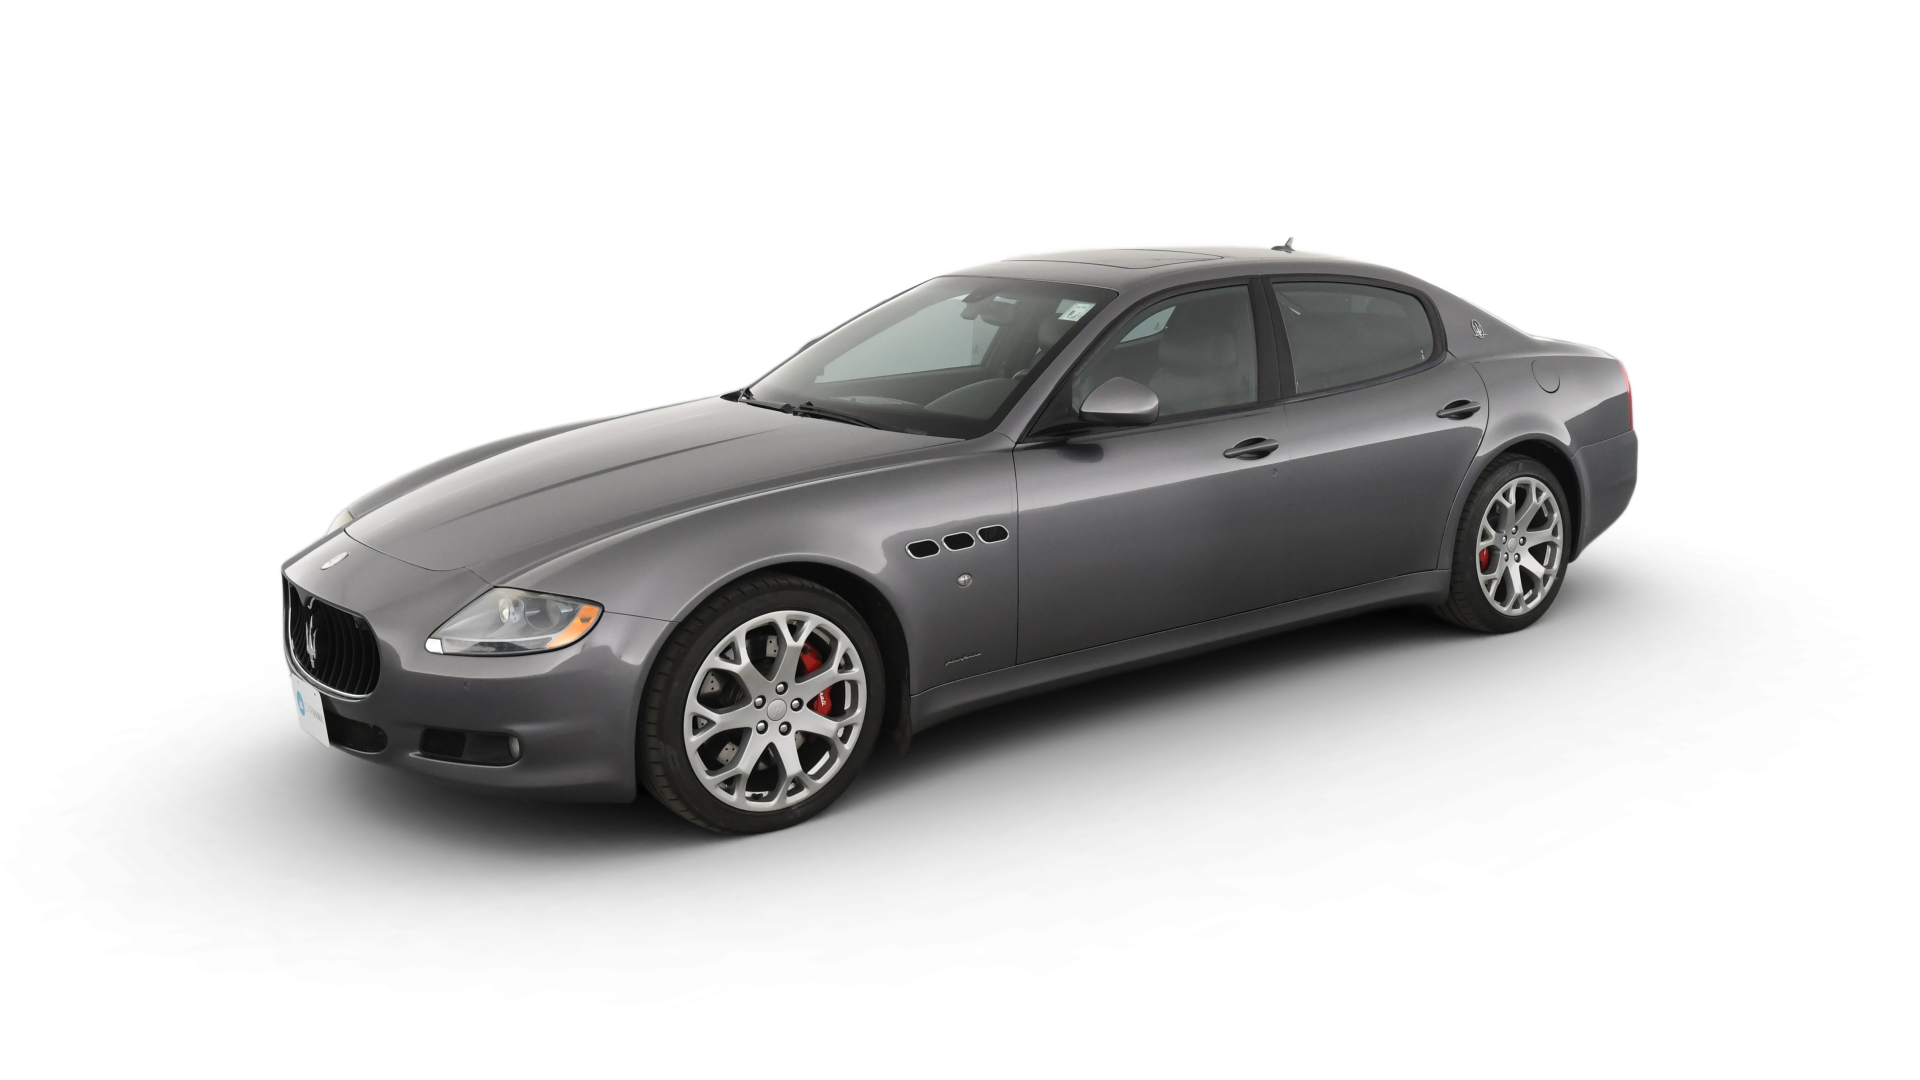 Maserati Quattroporte model image.